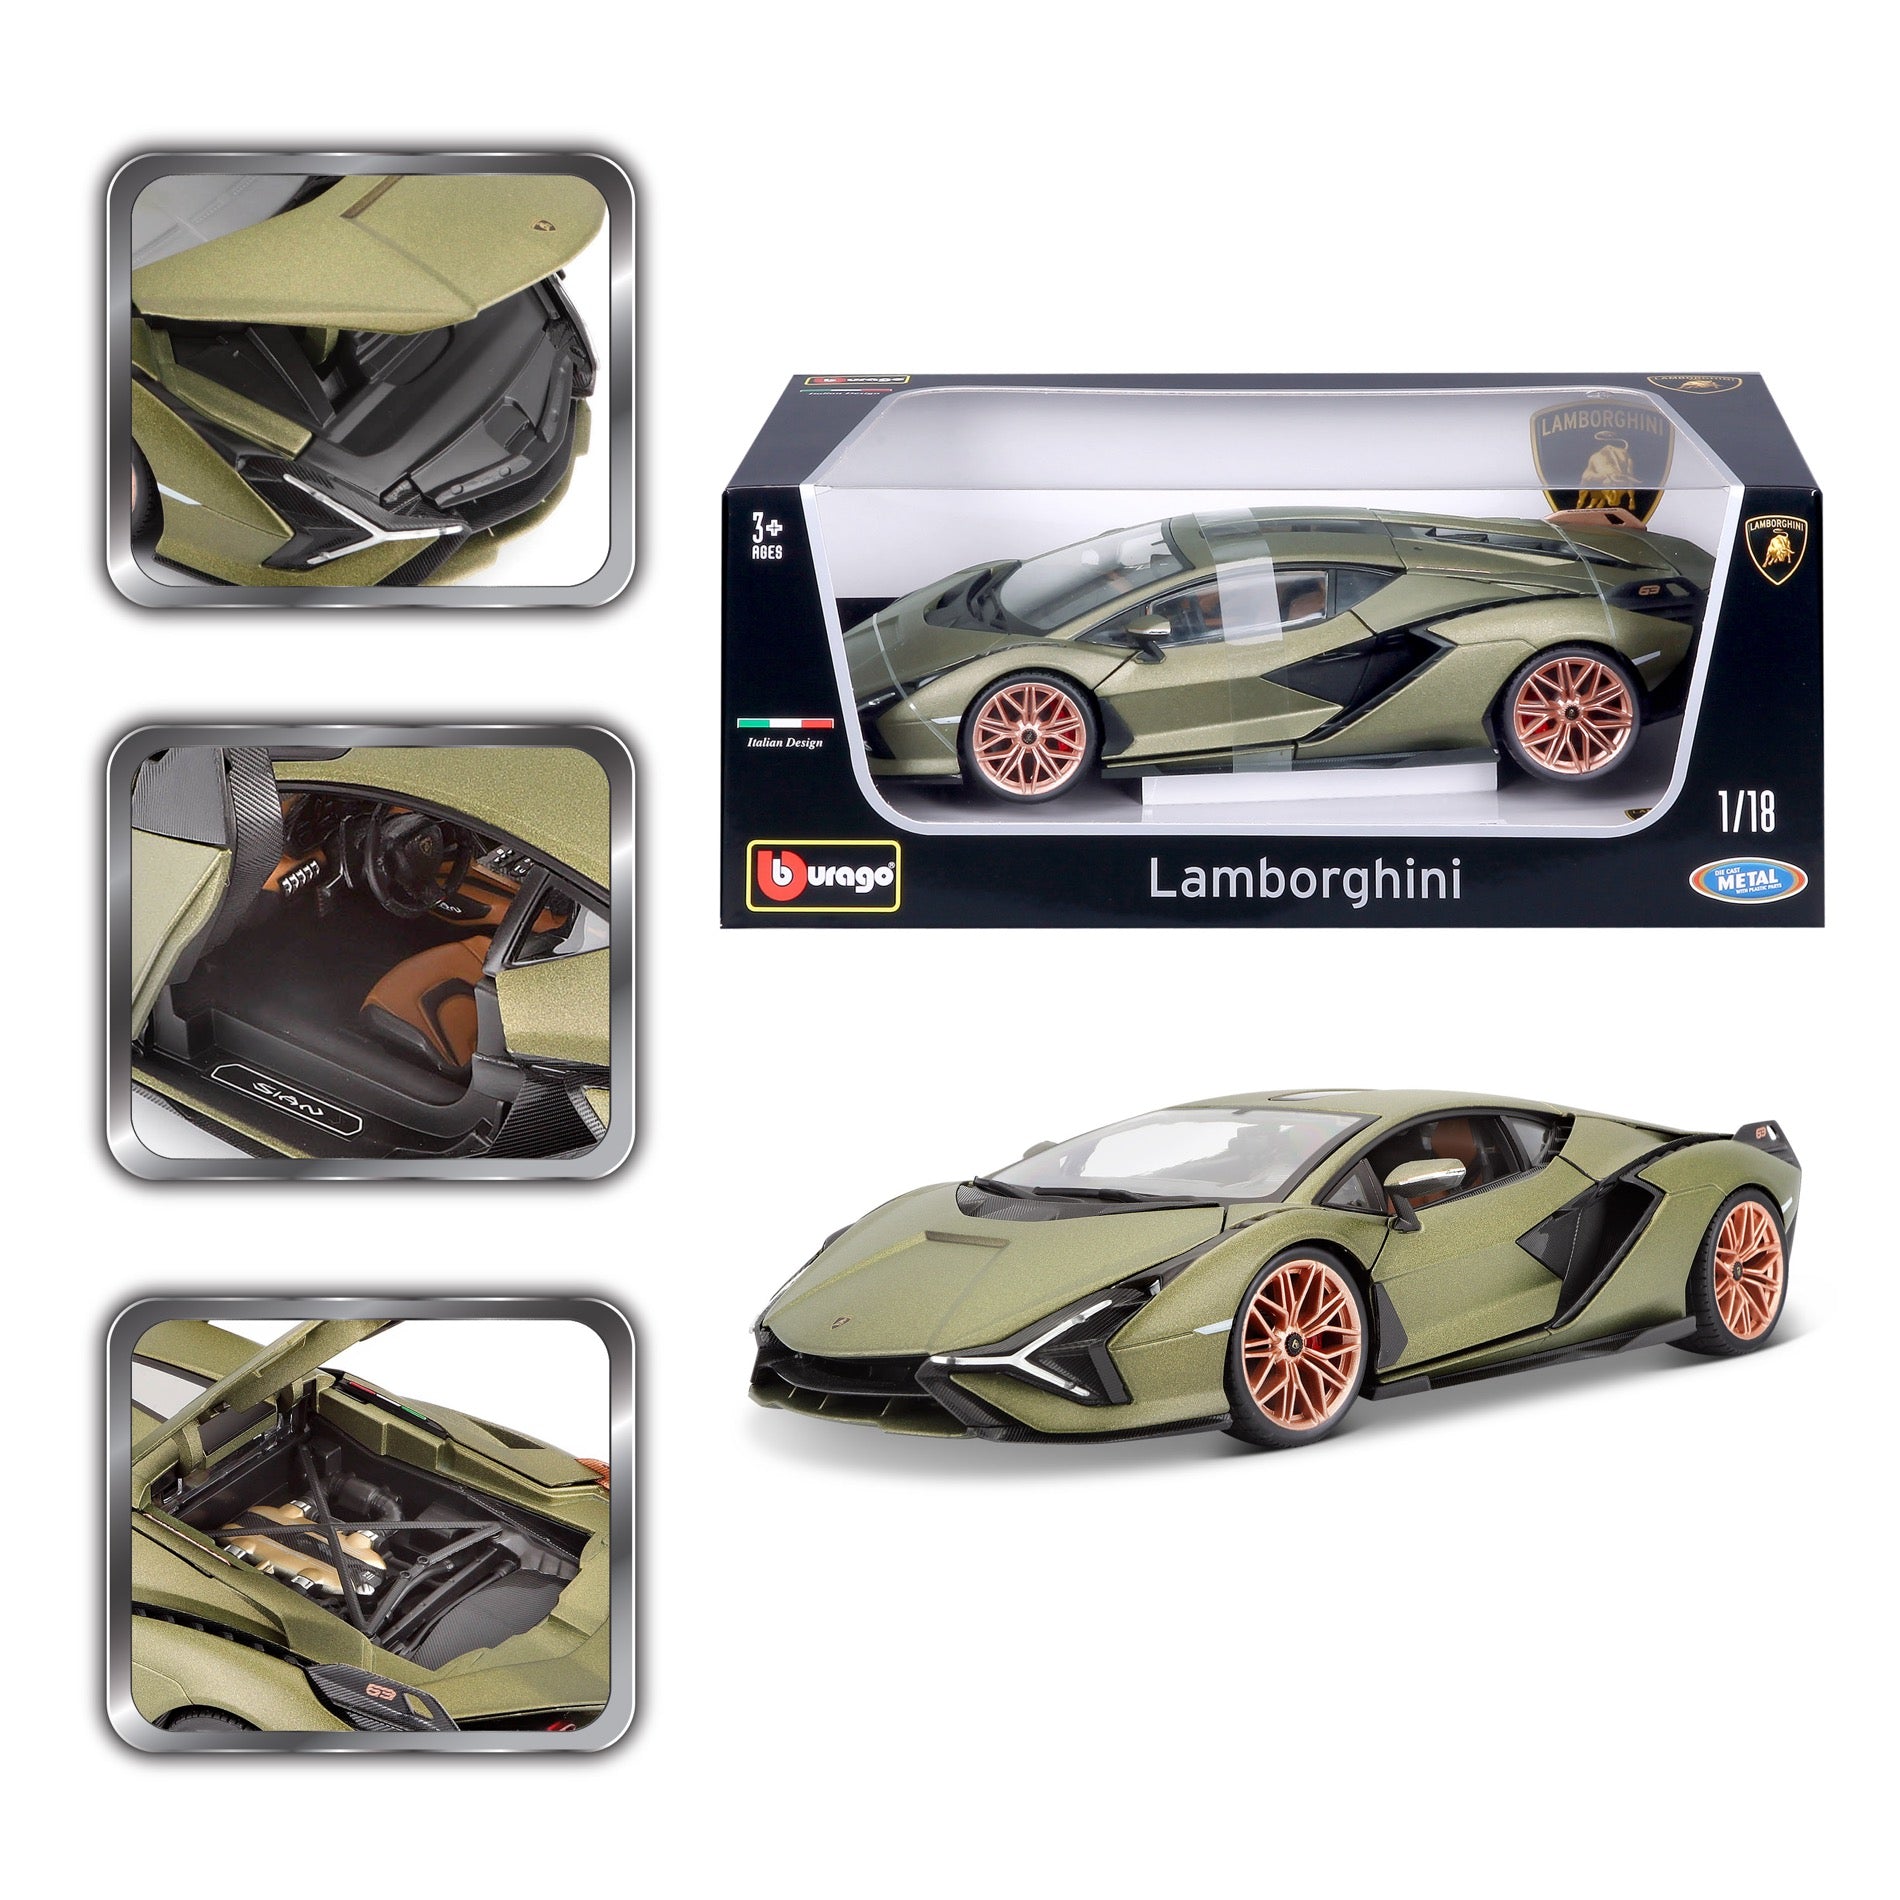 Lamborghini Sian FKP 37 1:18